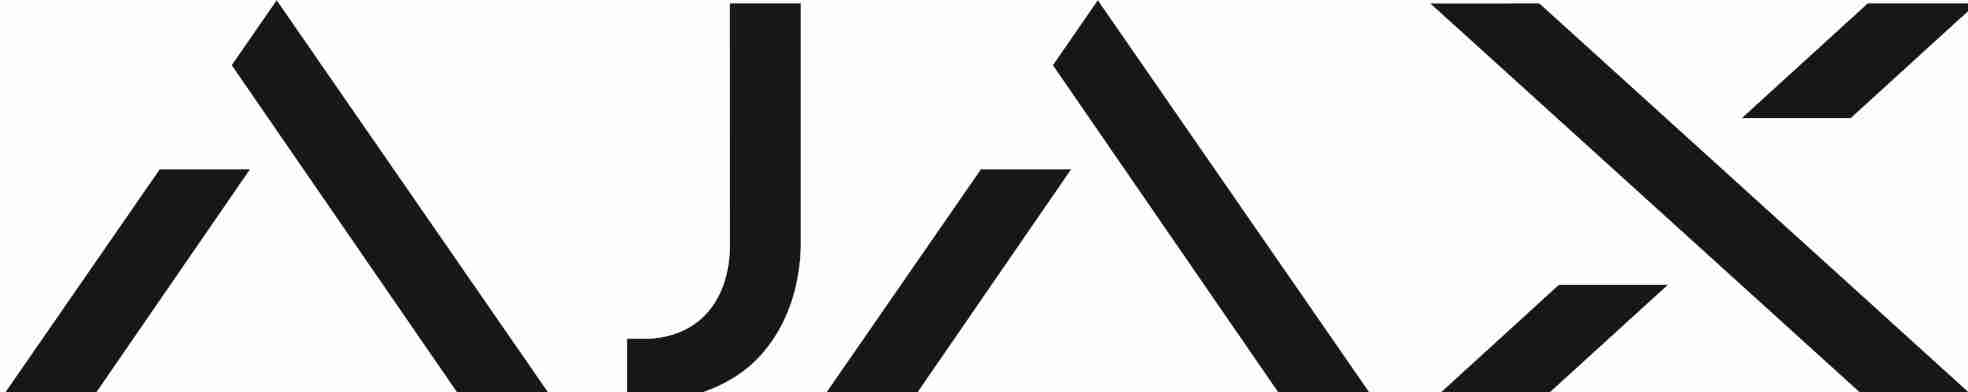 Ajax System Logo